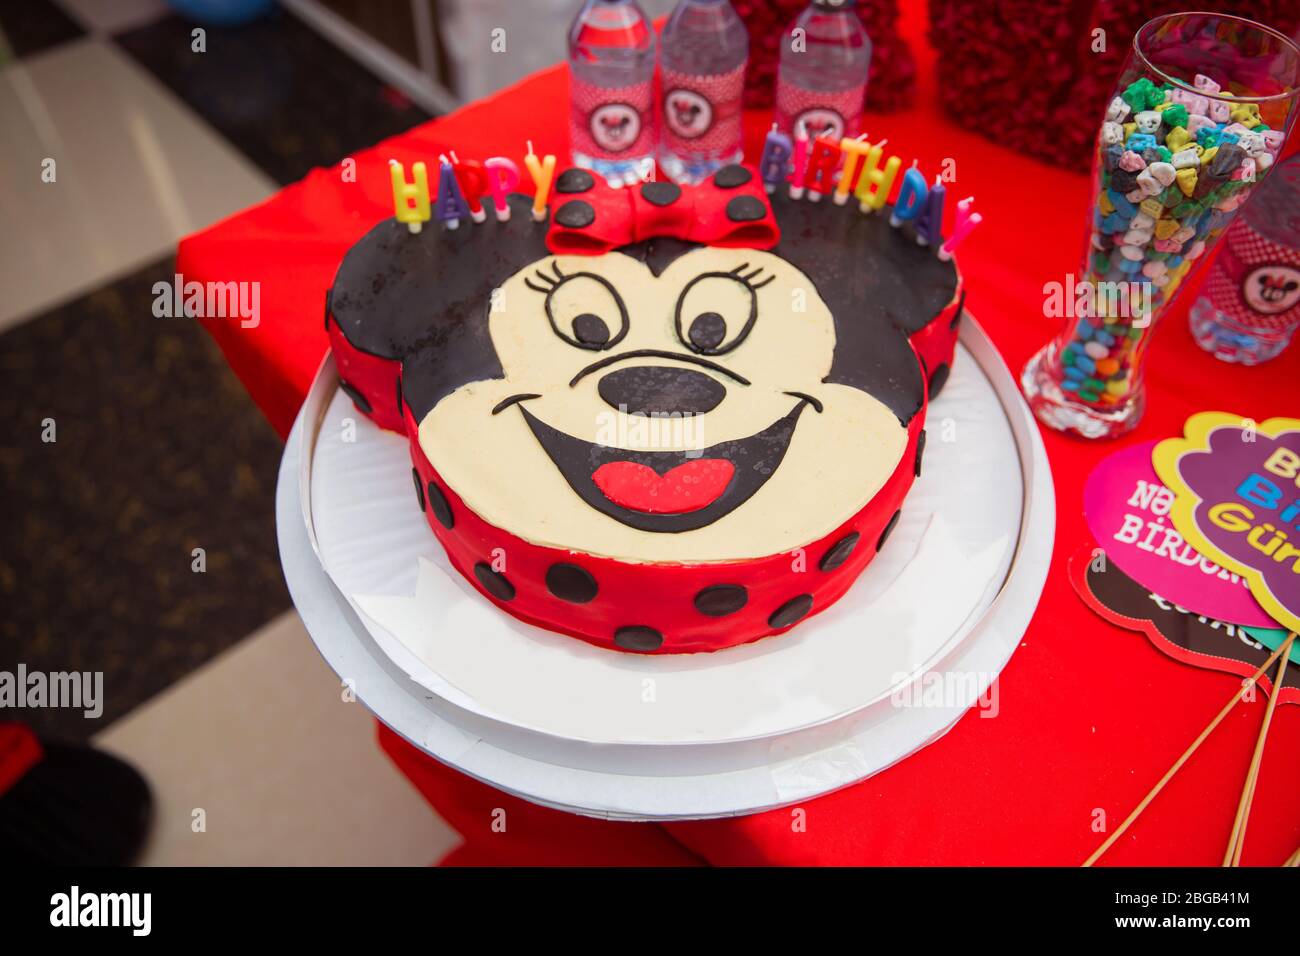 Disney Sweets Banque D Image Et Photos Alamy